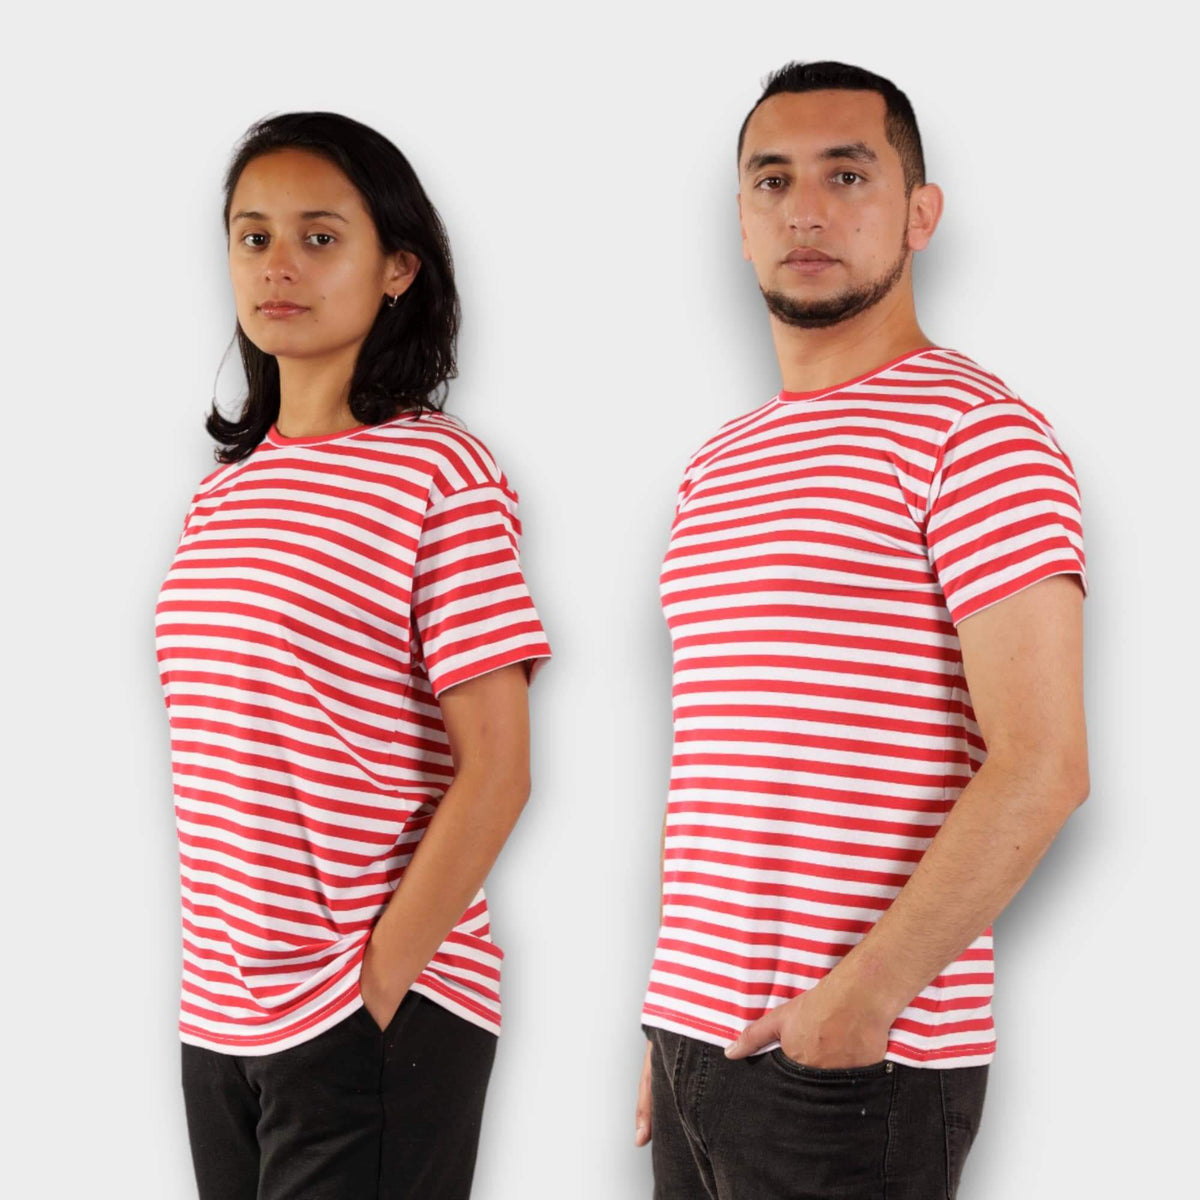 Camiseta de rayas - Blanco/Rayas rojas - MUJER